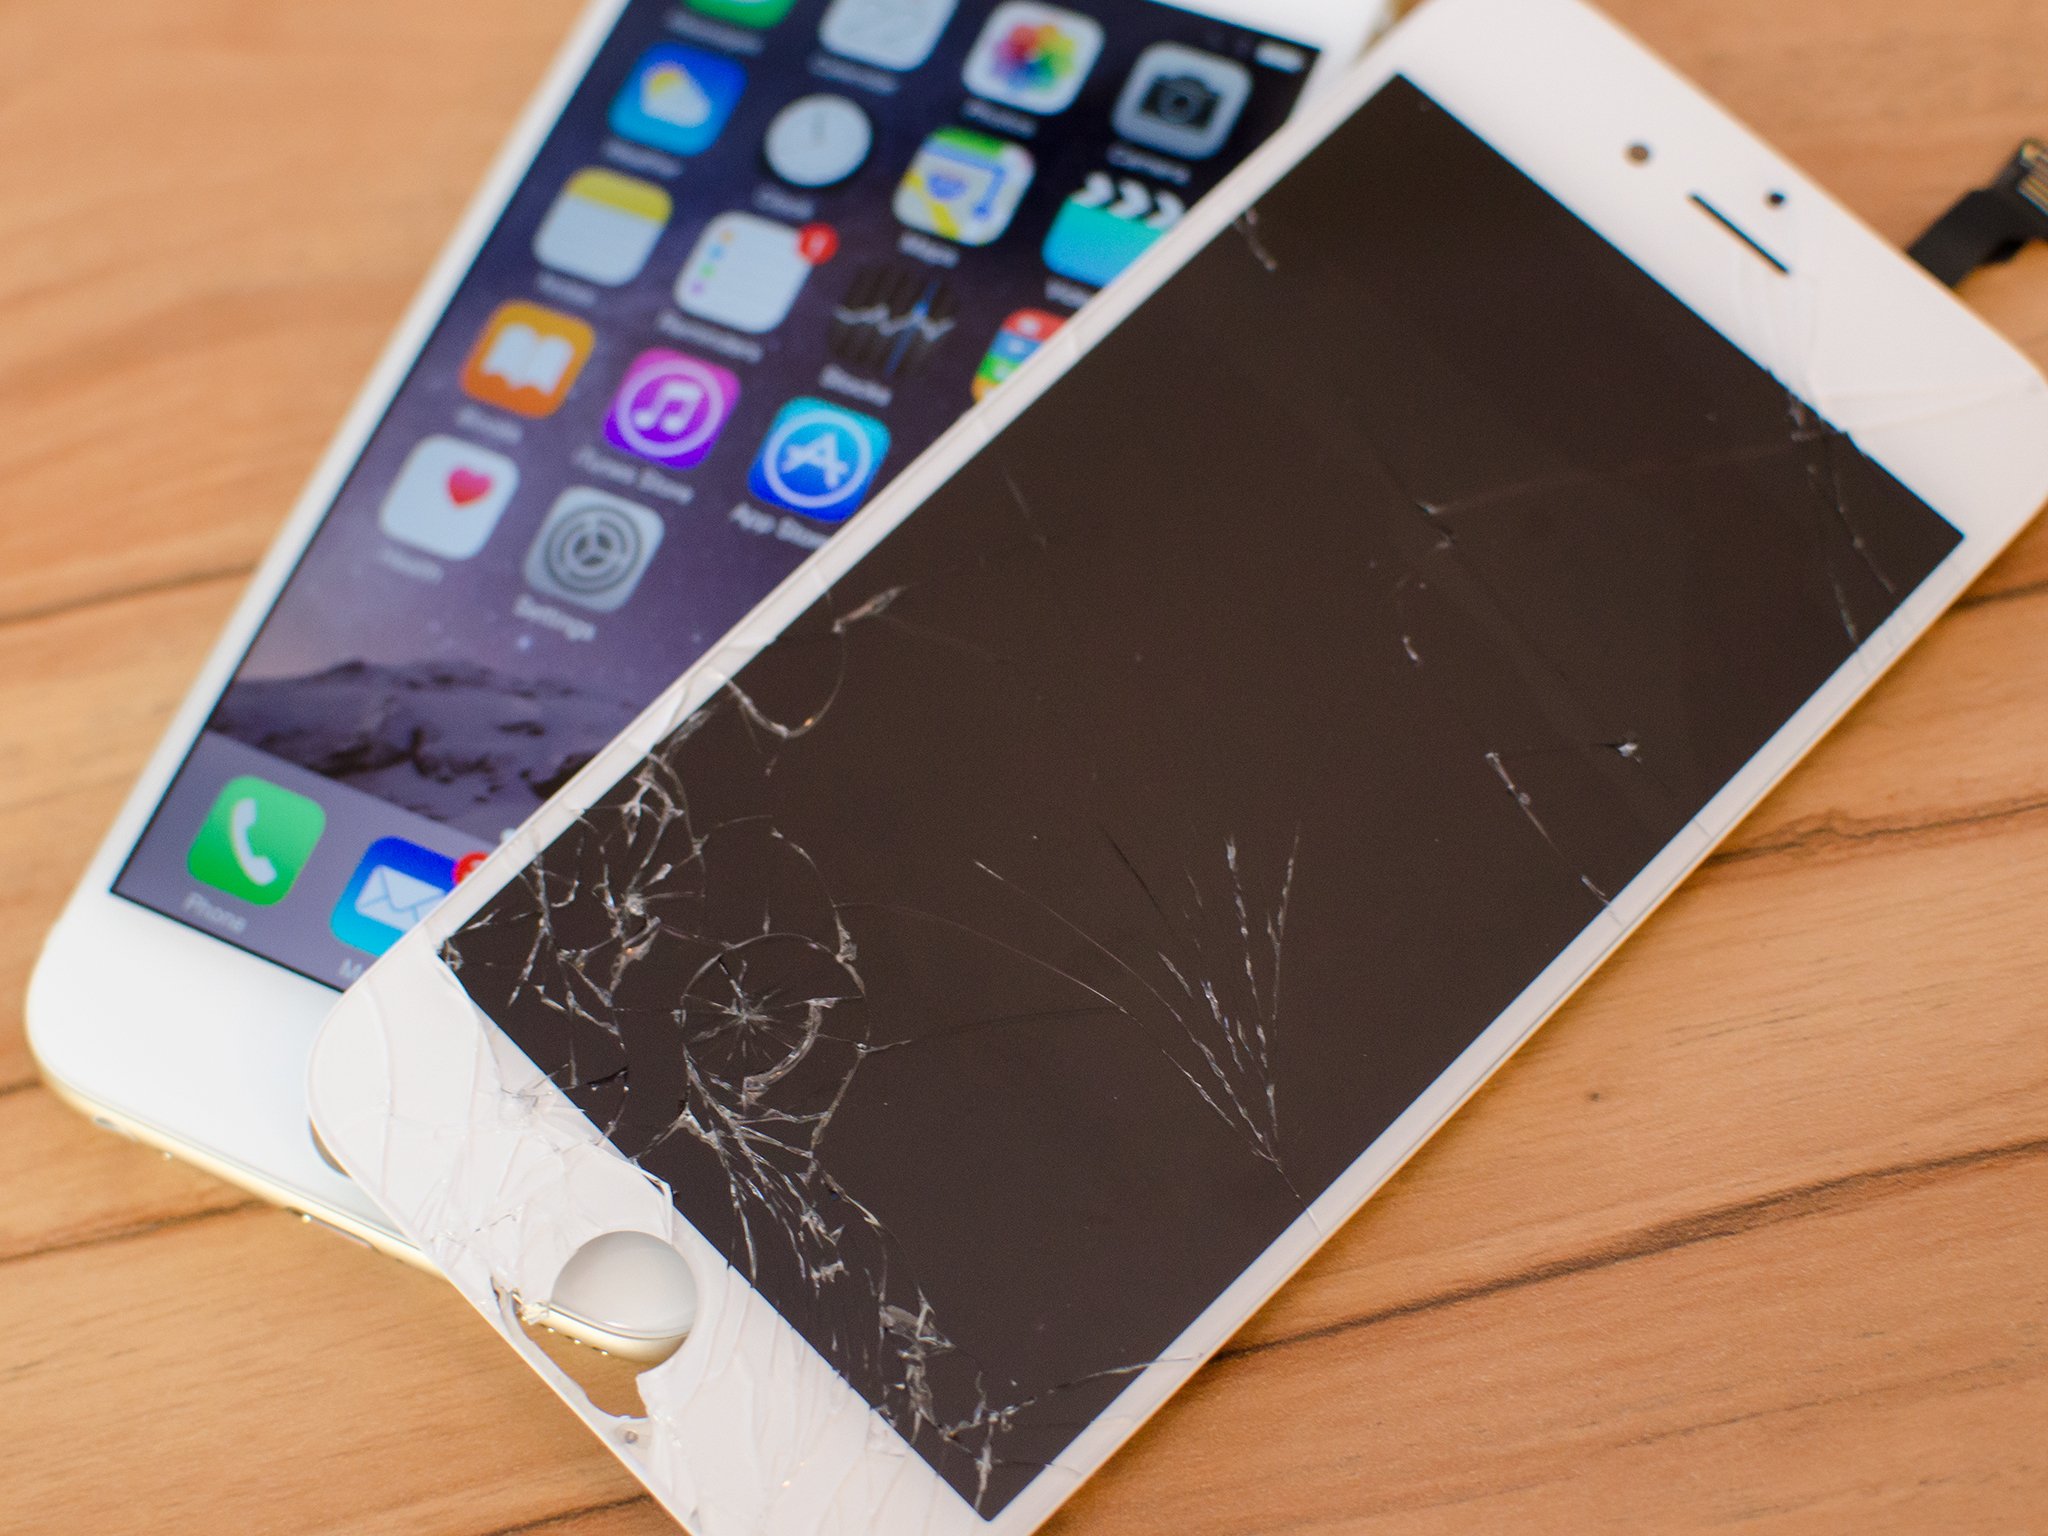 iphone-6-broken-display-fixed-hero.jpg